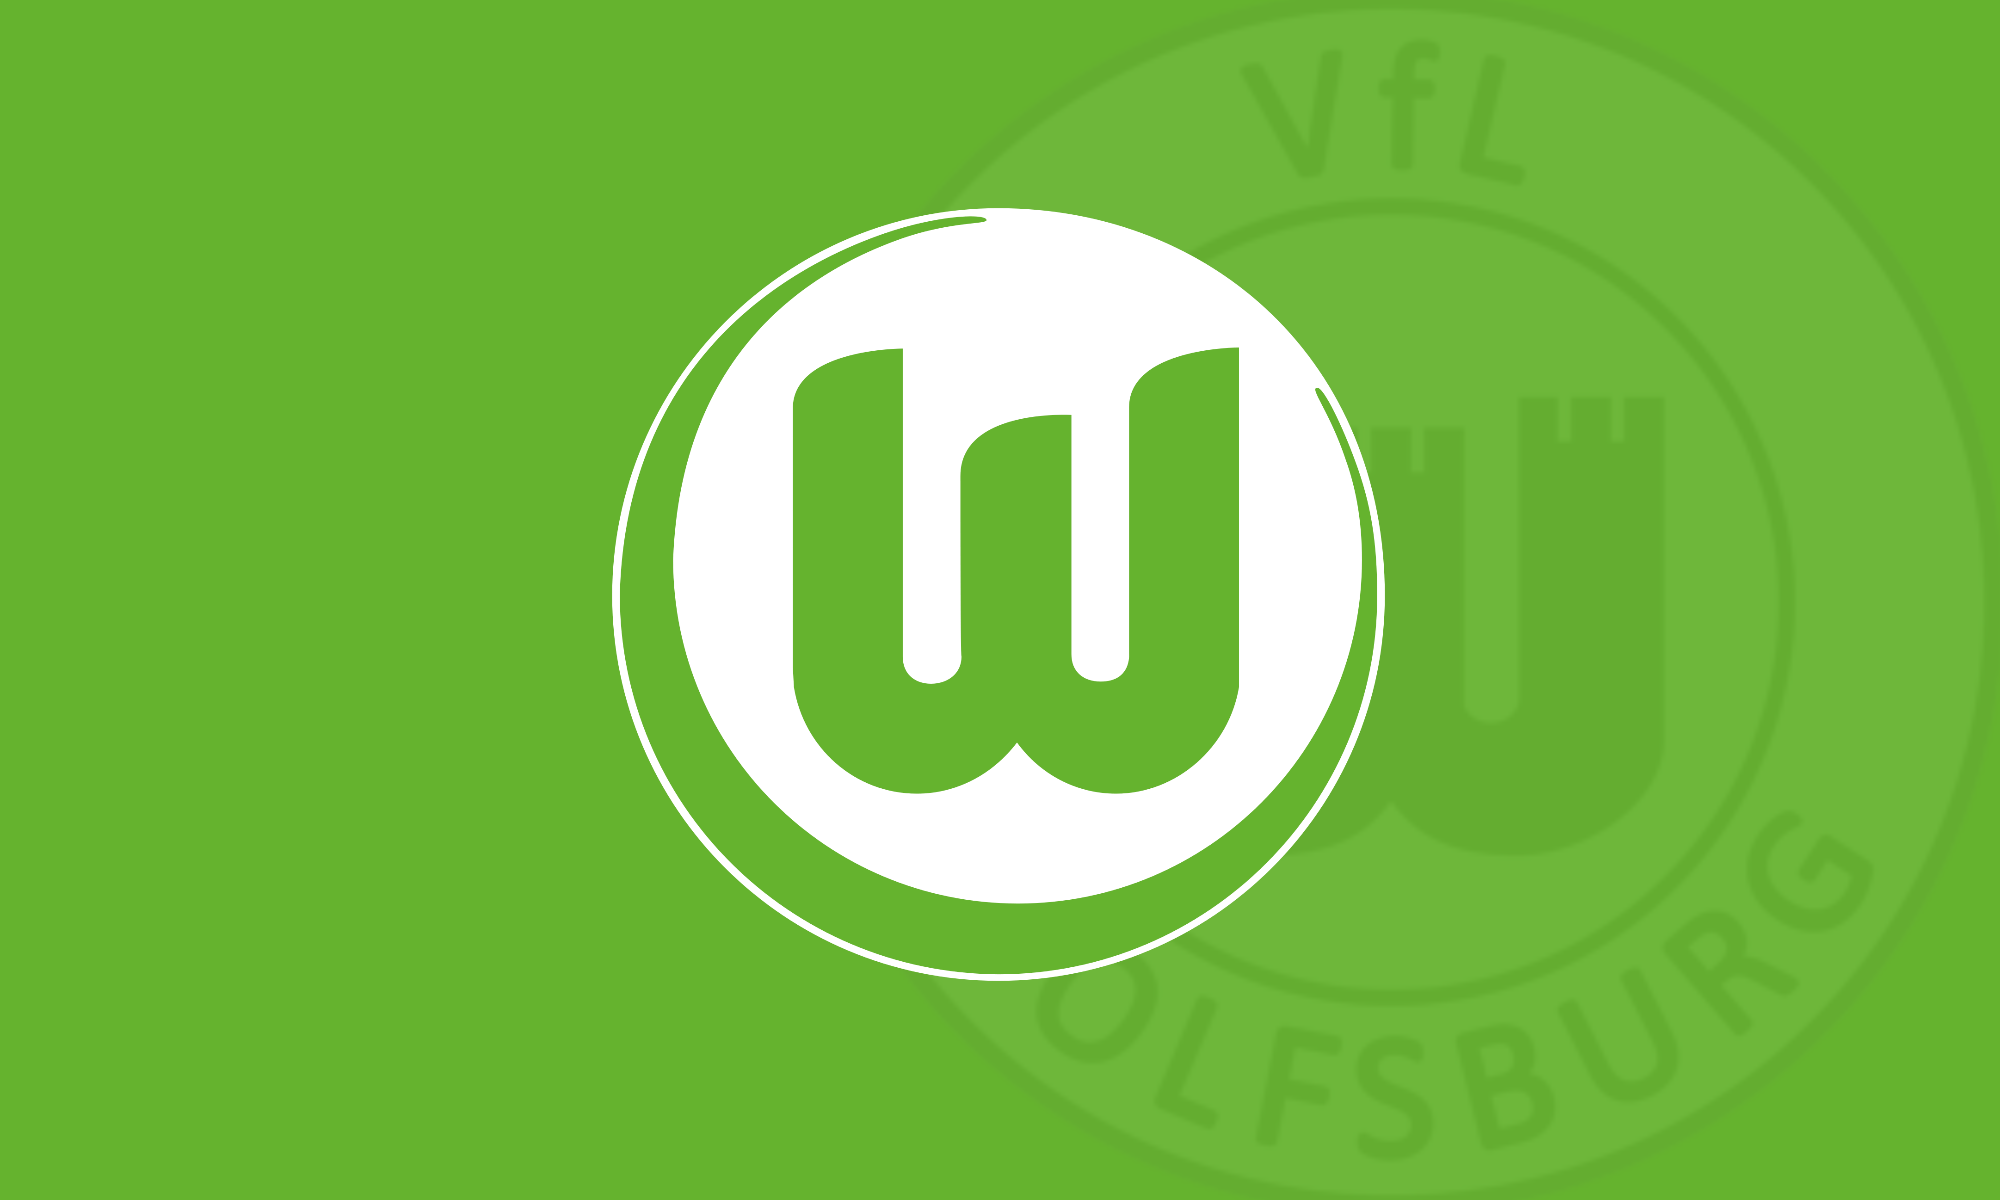 Original Wolfsburg Logo - VfL Wolfsburg wallpaper including retro badge [OC] : diewolfe